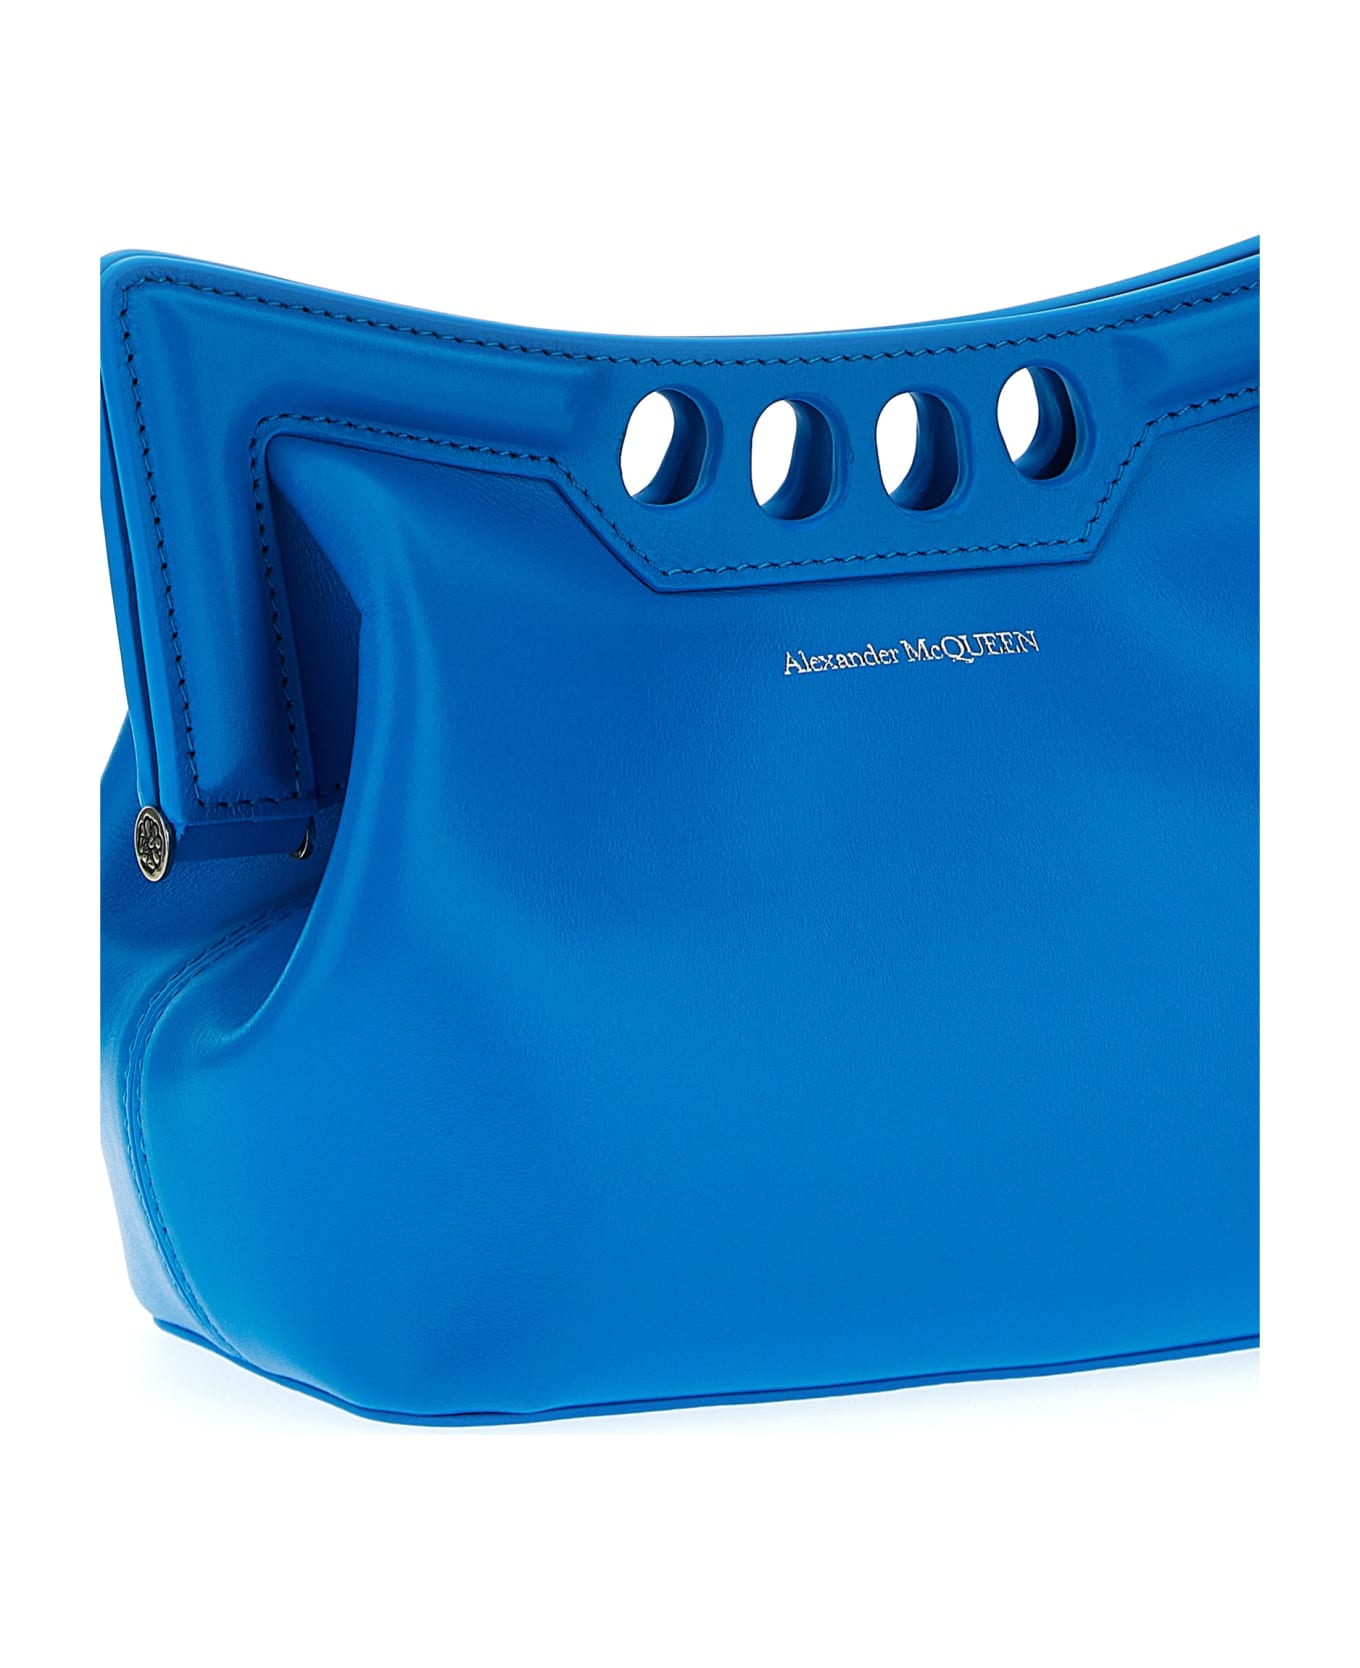 Alexander McQueen Peak Mini Shoulder Bag - Blu ショルダーバッグ